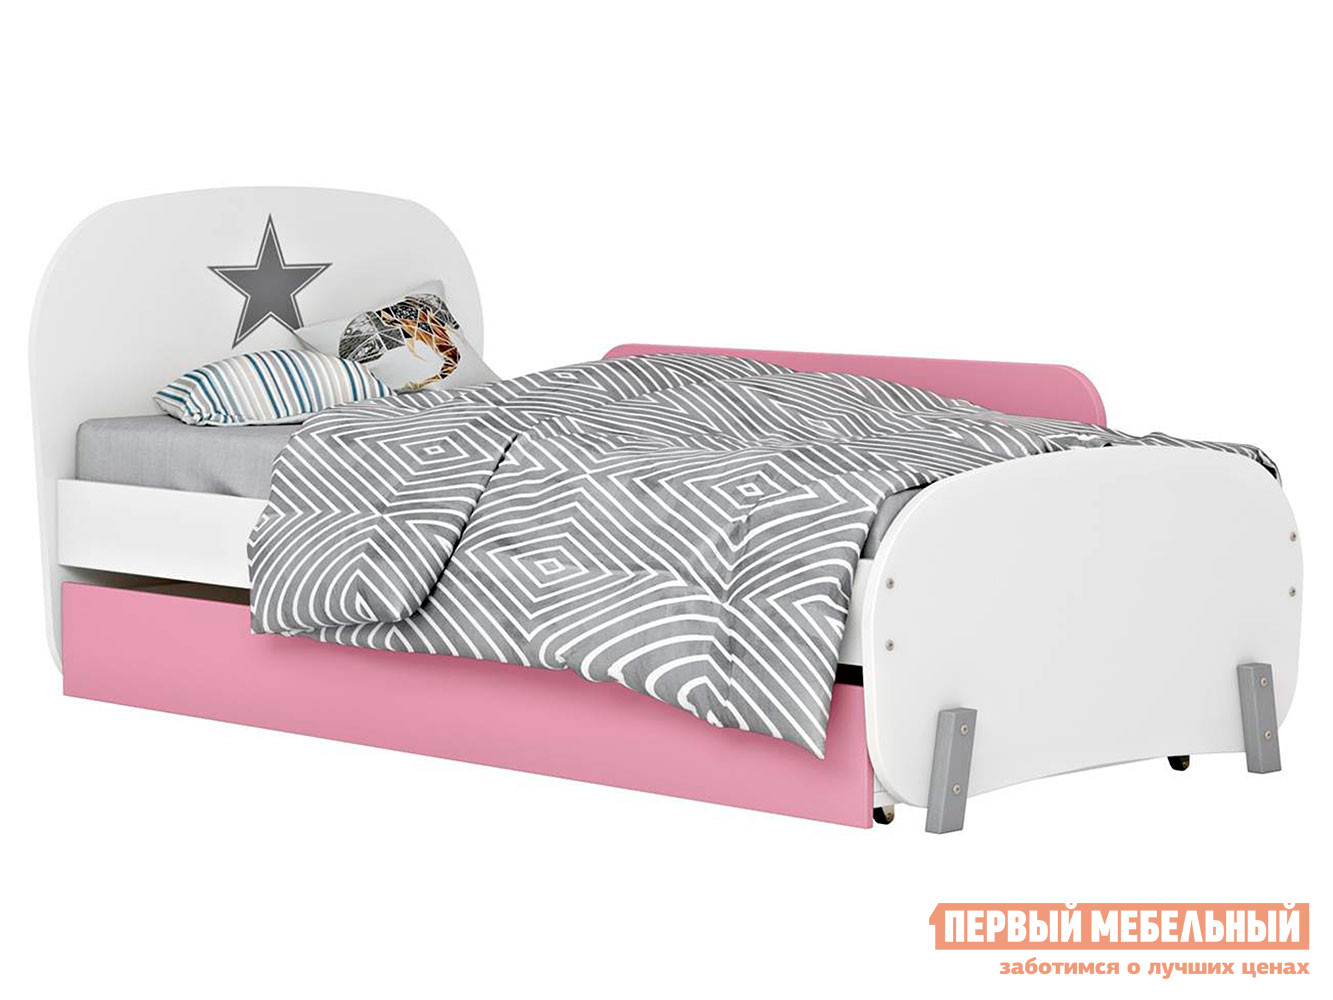 Аксессуар для детских кроватей  Мирум Розовый от Первый Мебельный